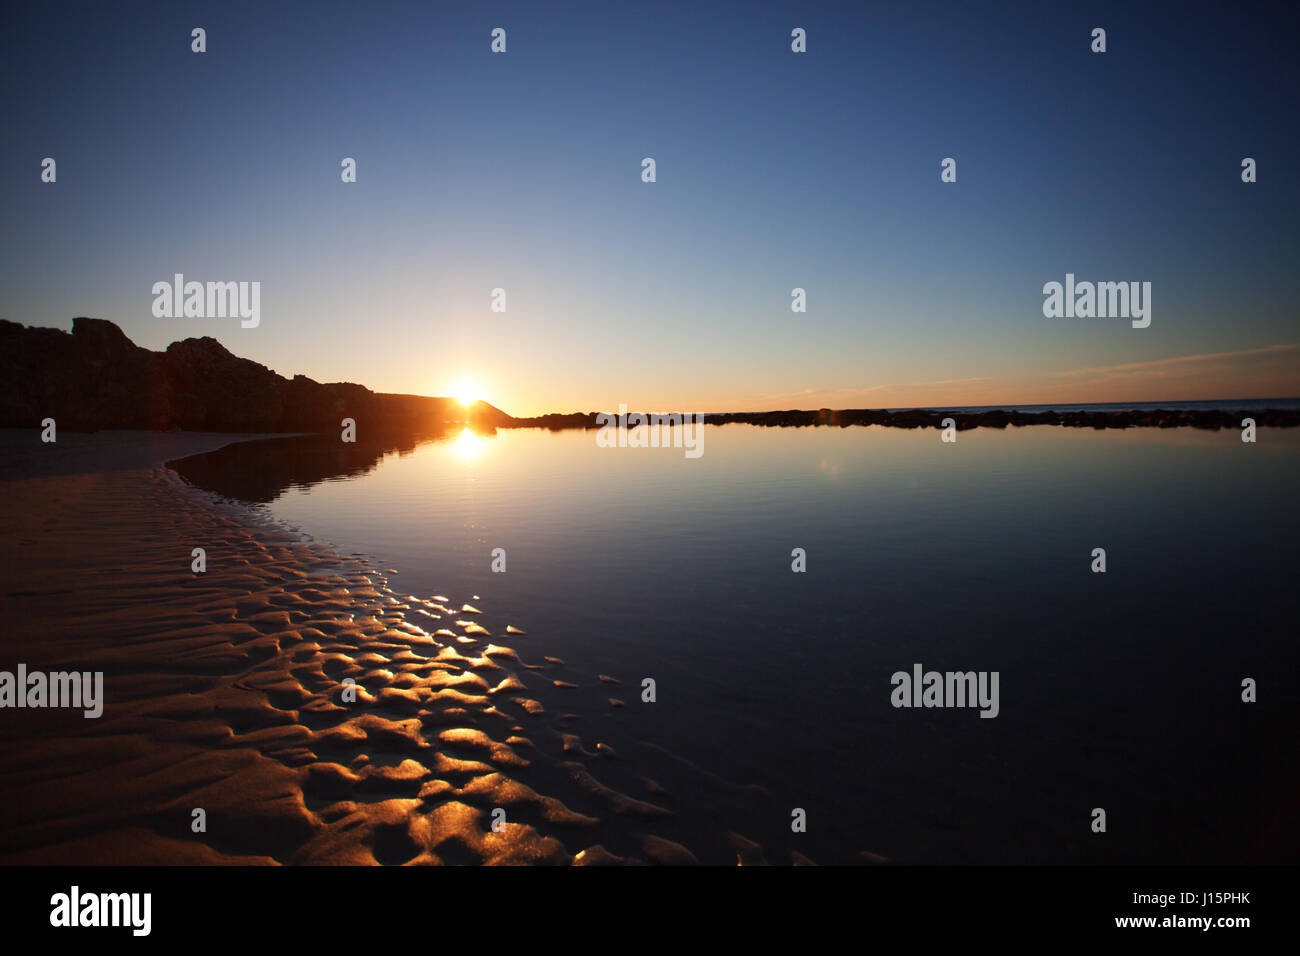 Vista panorámica de la hermosa puesta de sol en la playa. Isla Canguro, Australia del Sur. Foto de stock